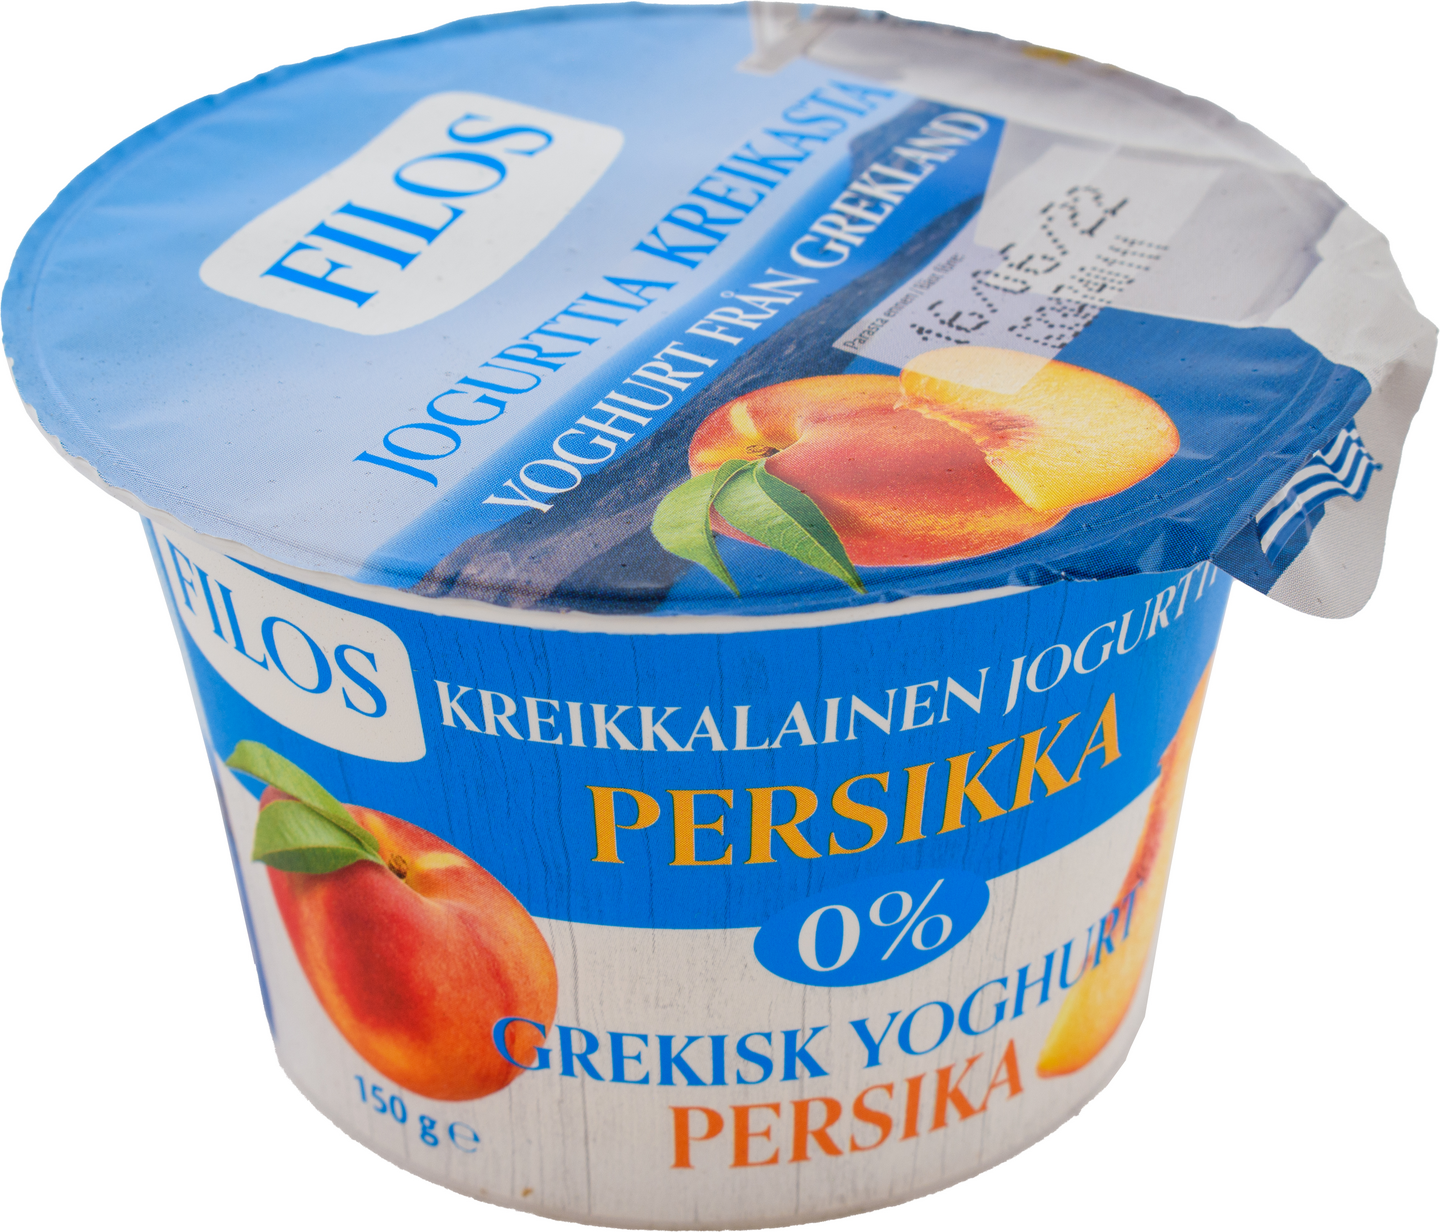 Filos kreikkalainen jogurtti 150g 0% persikka